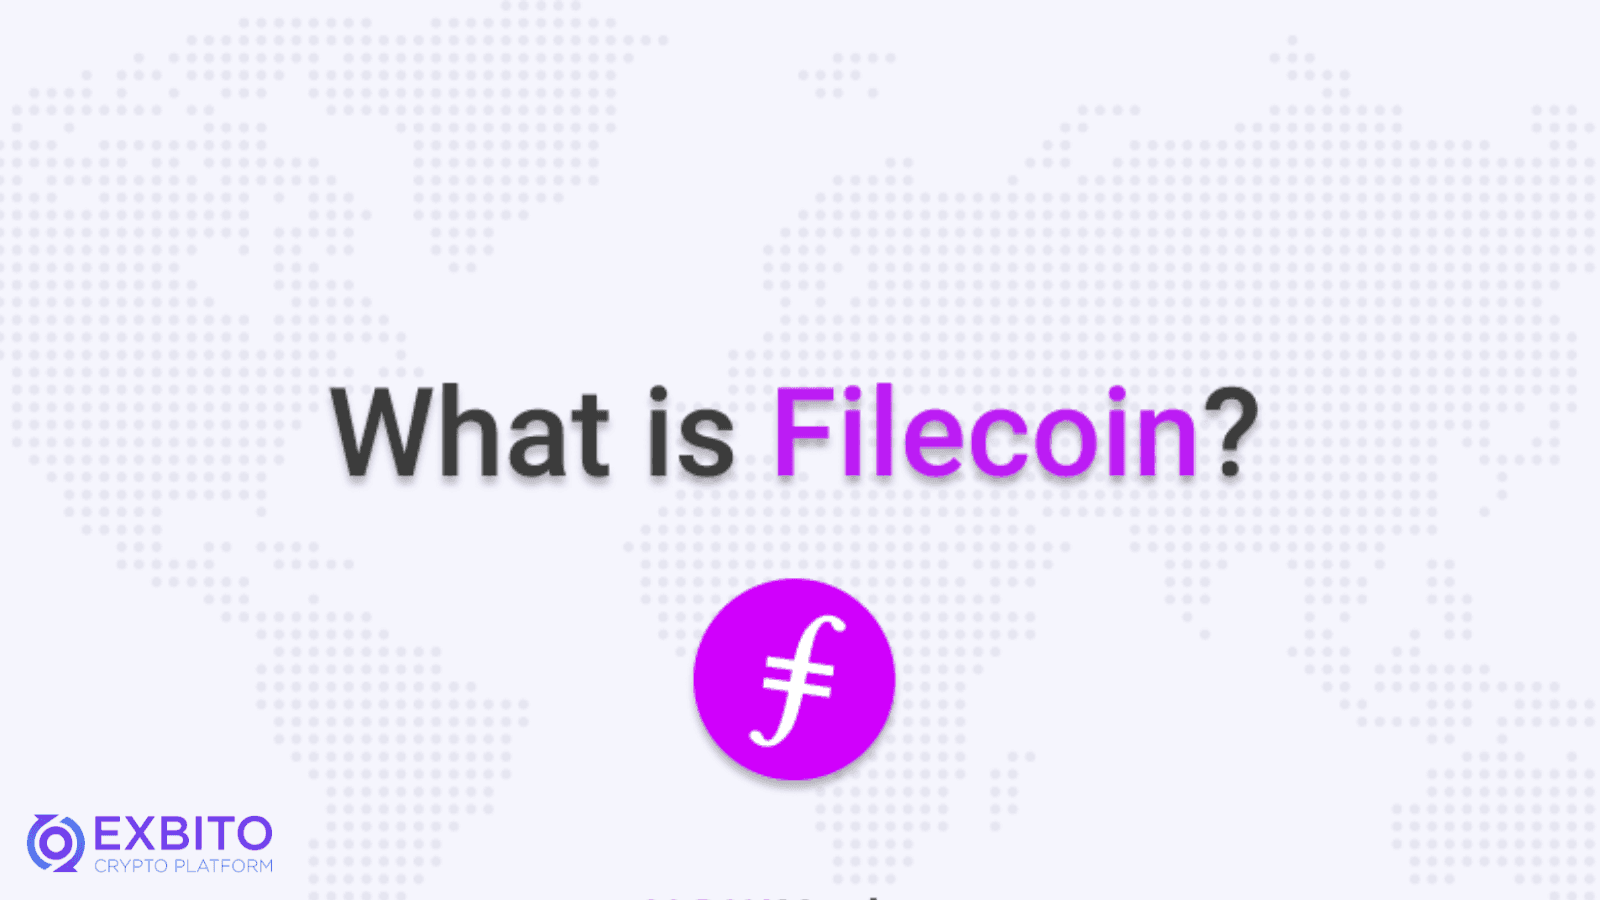 فایل کوین (Filecoin) چیست؟